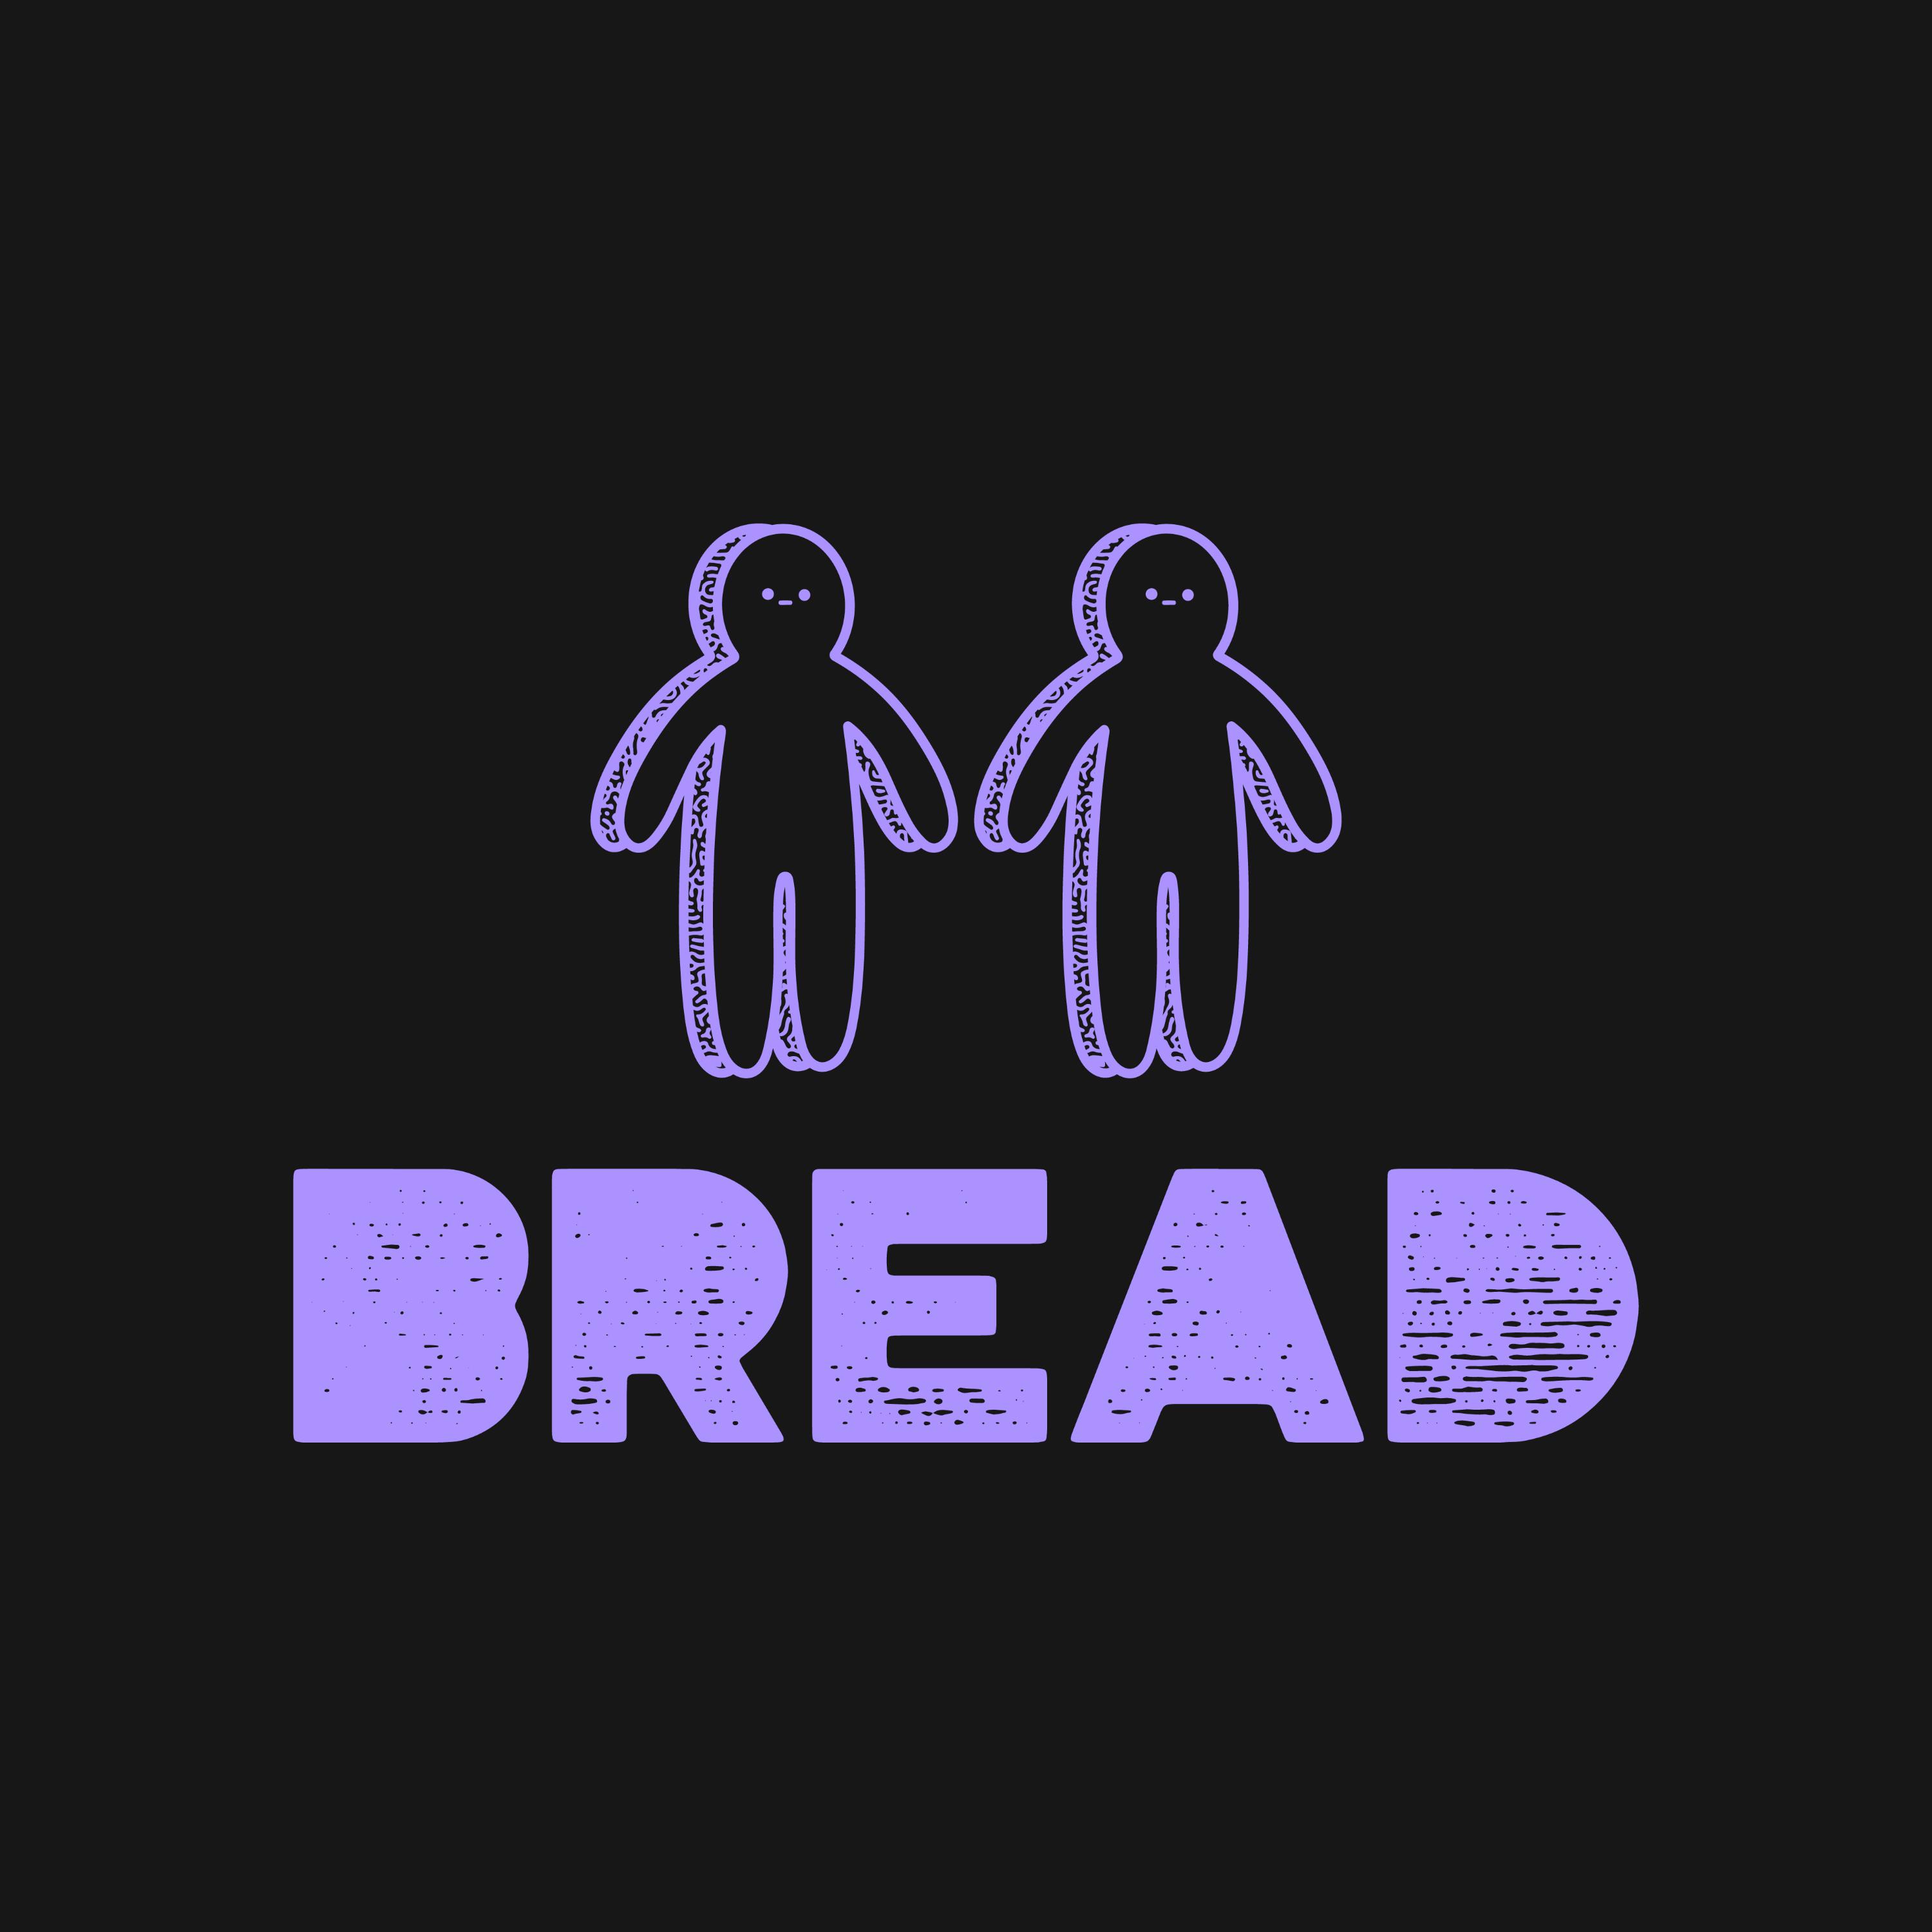 Discord - Bread